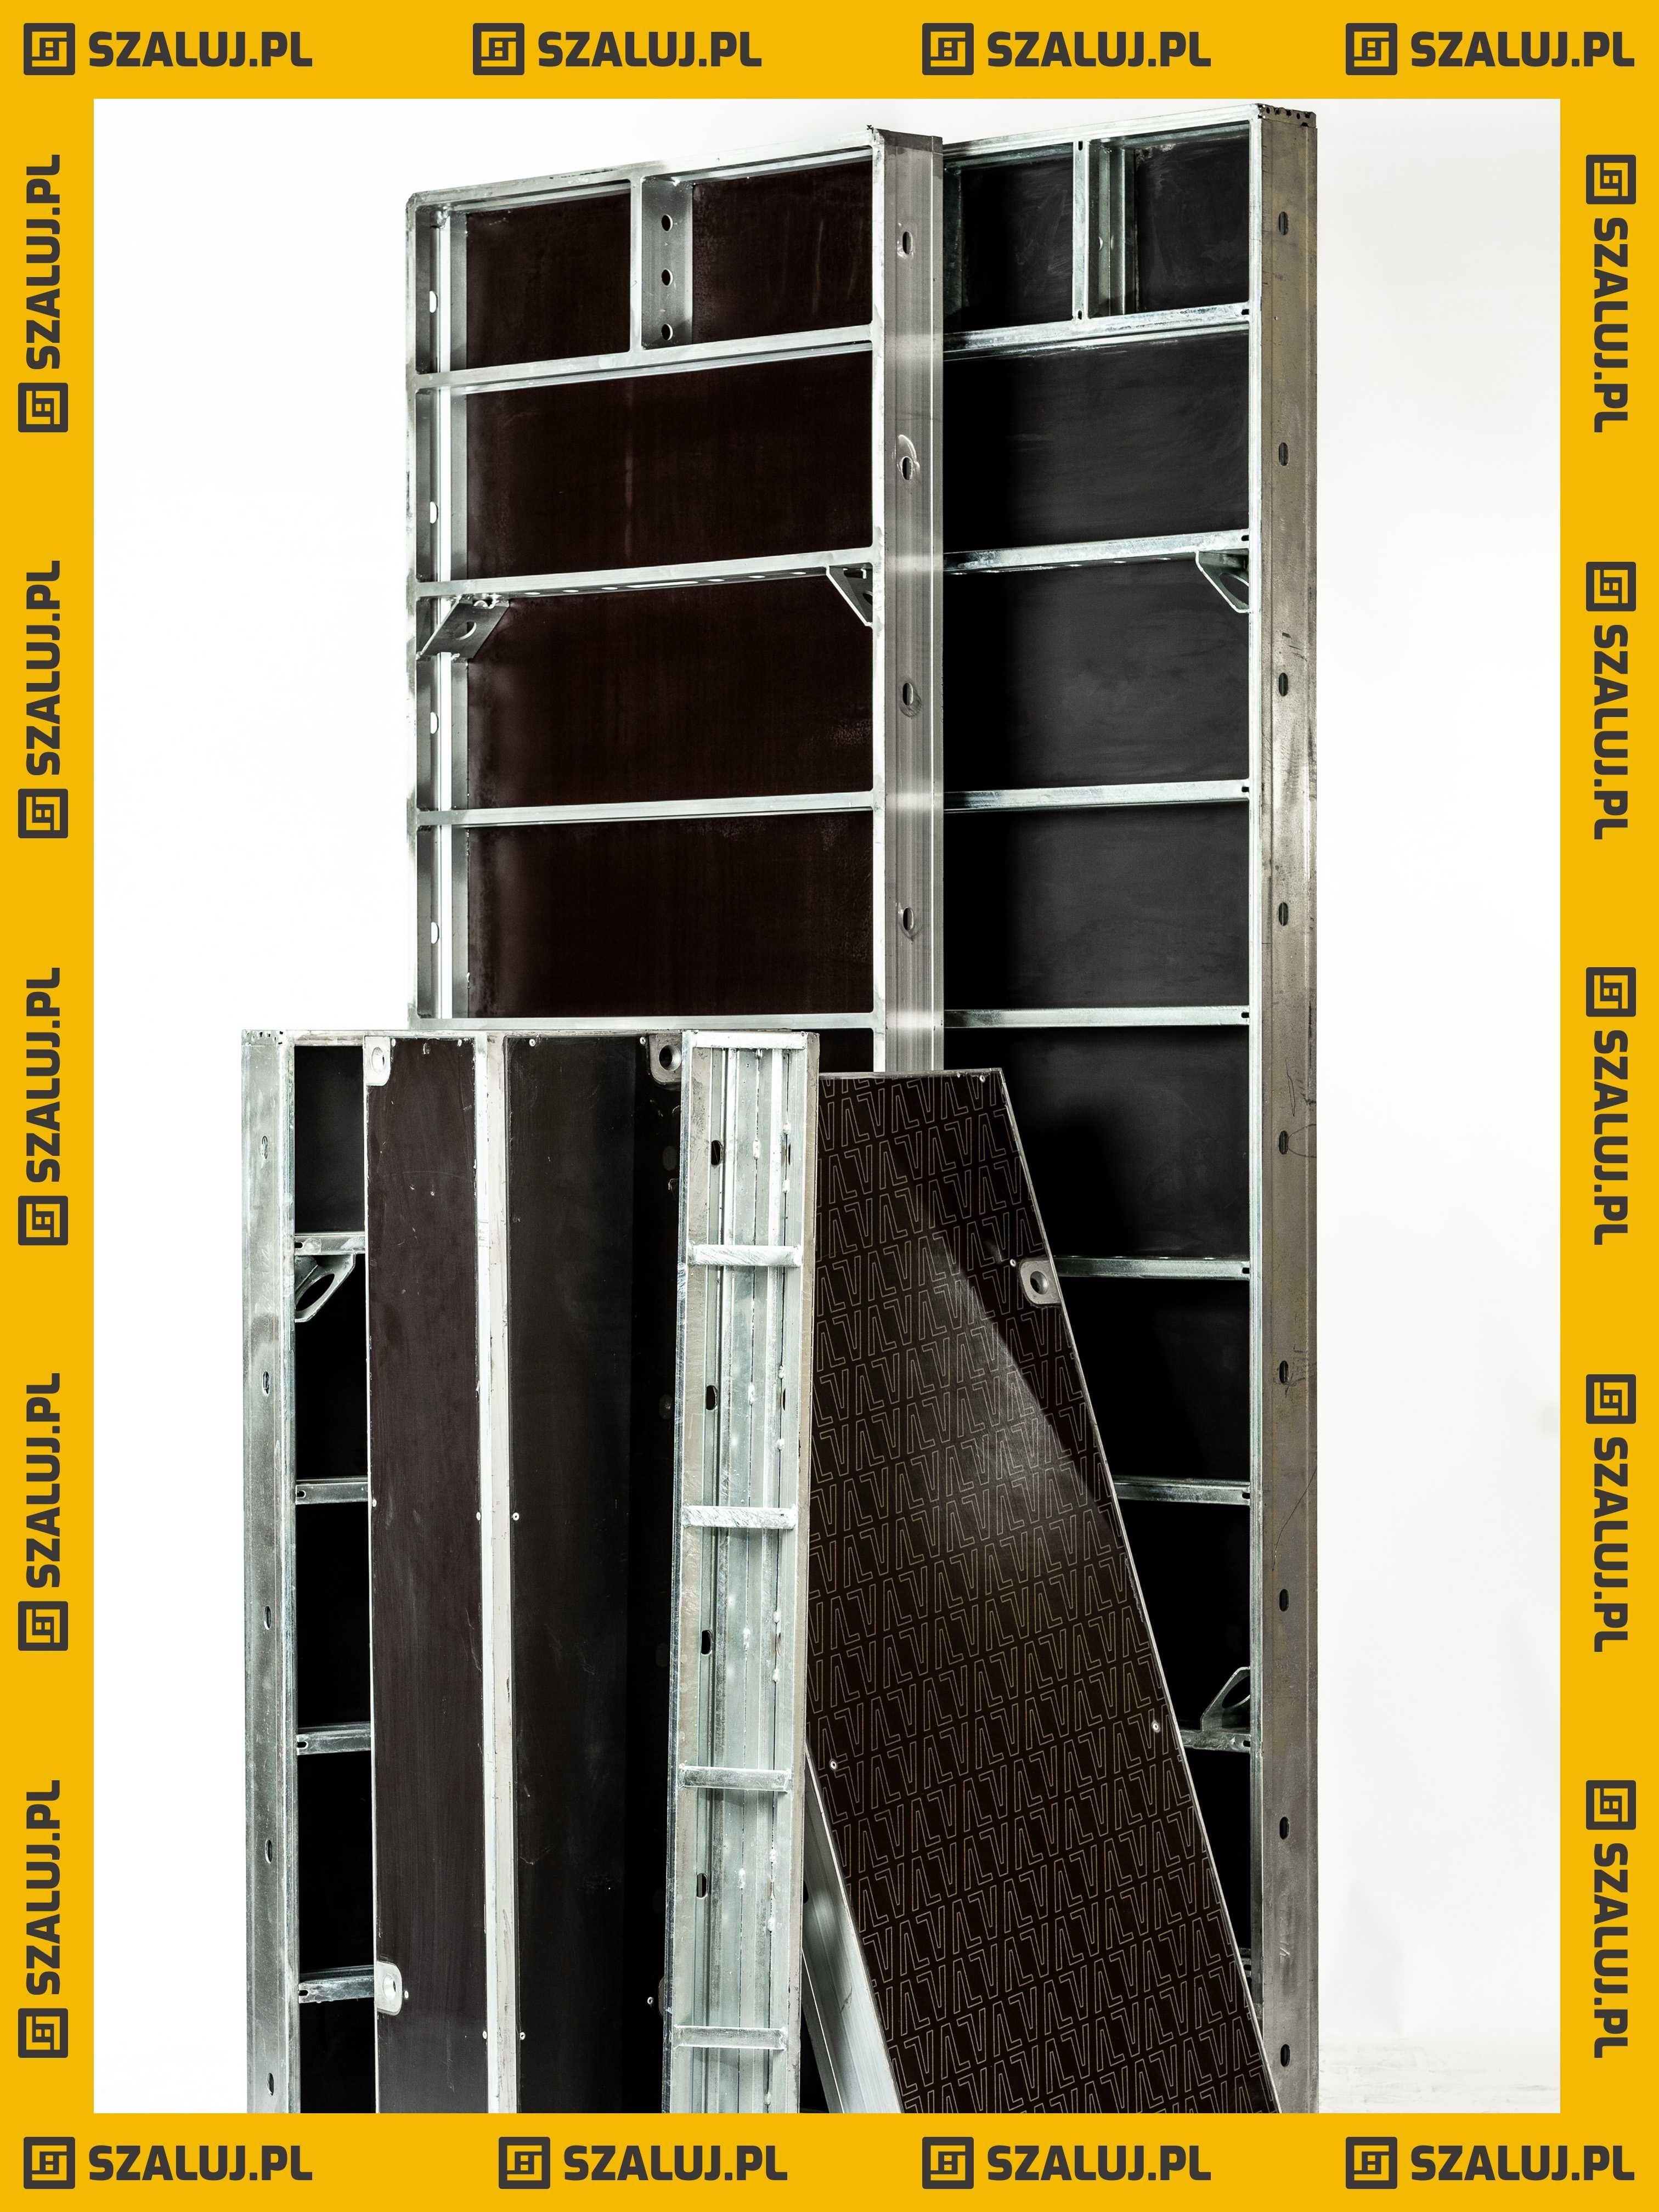 Płyta Bauframe-Alu 90x270 szalunek budowlane płyty sklejka brzozowa